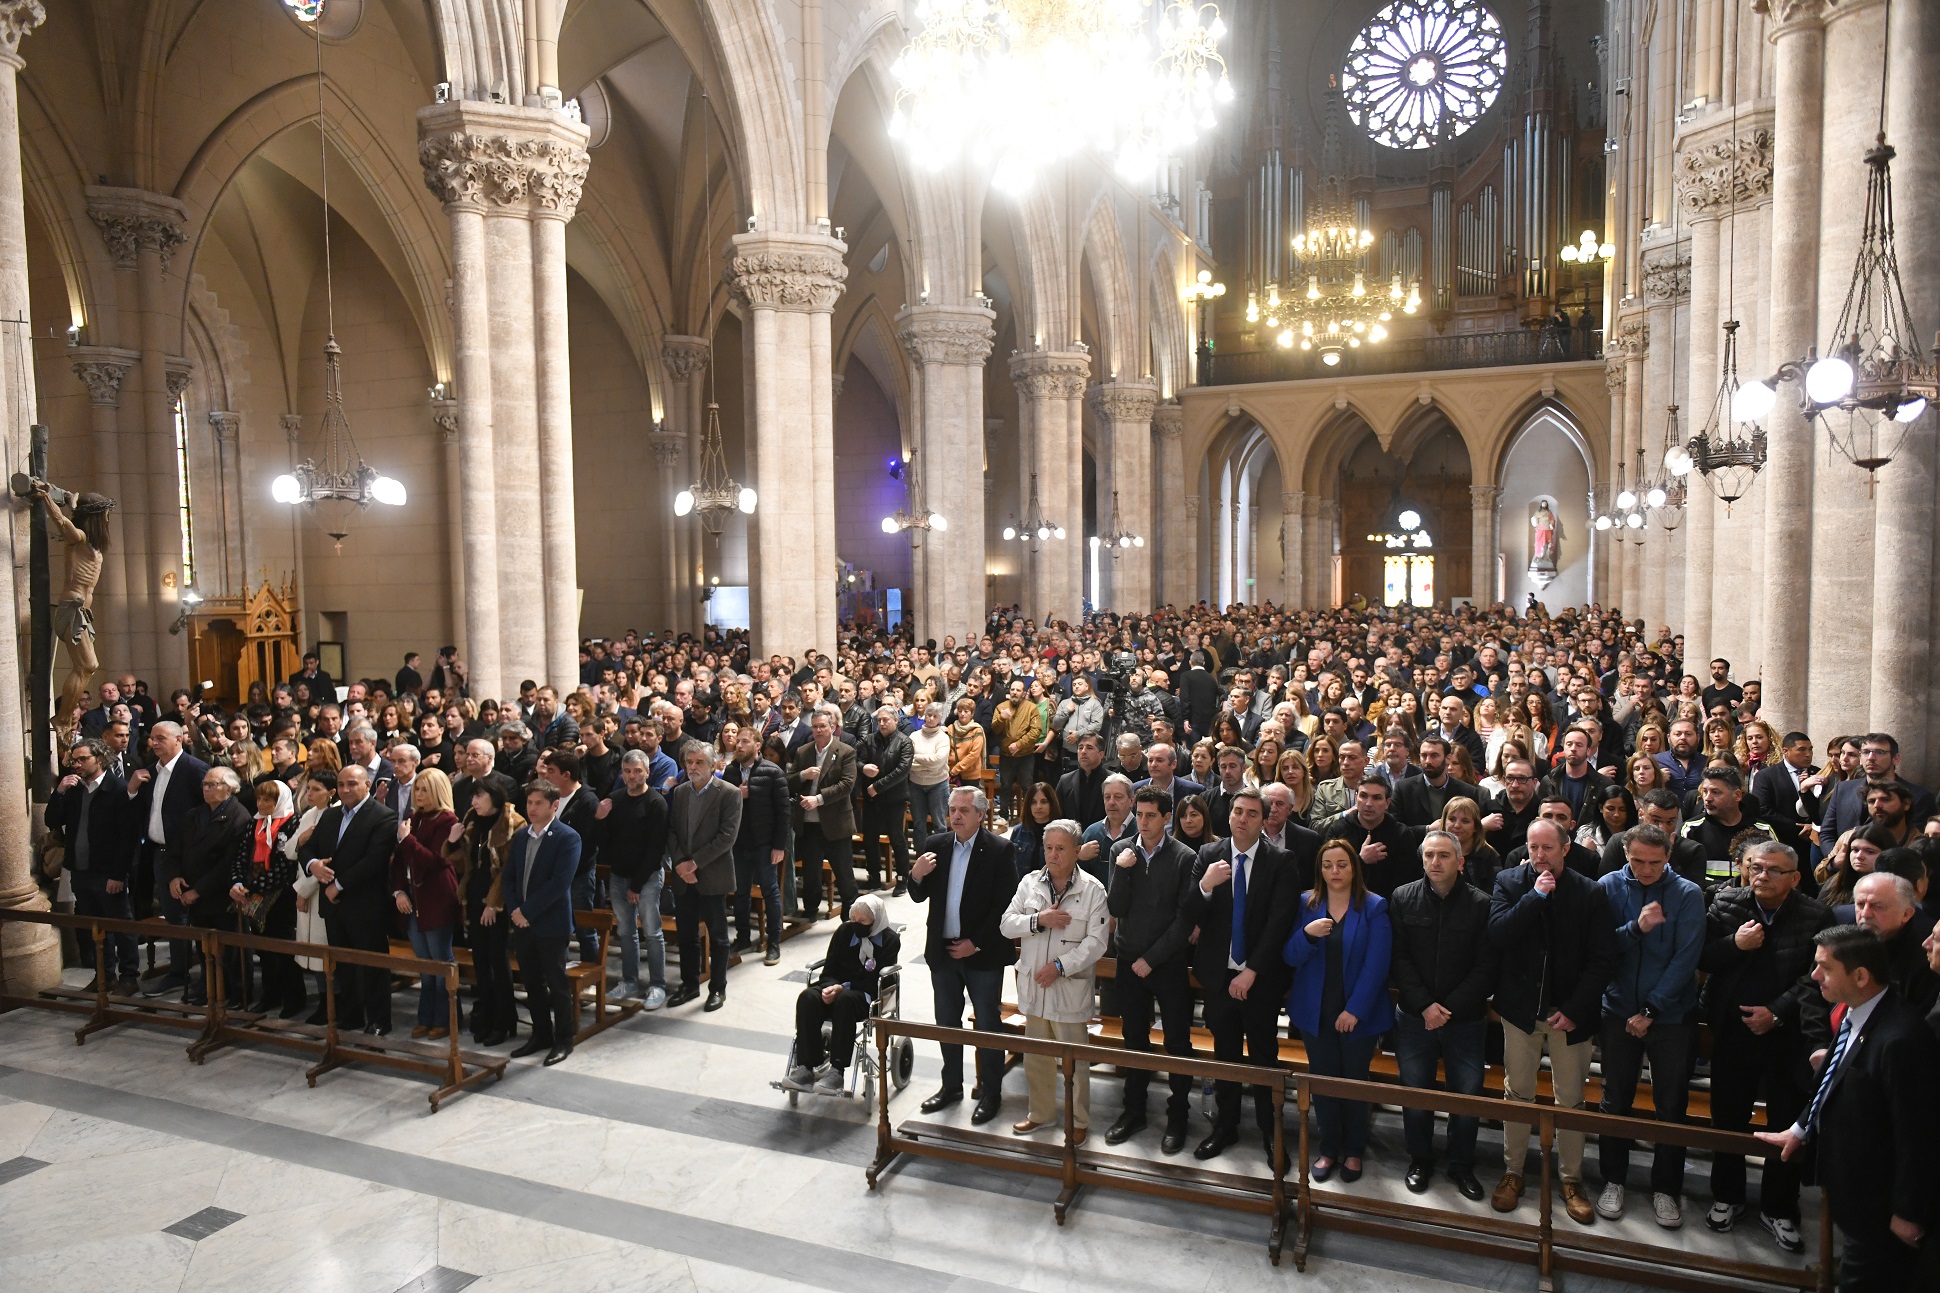 El presidente asistió en Luján a la Misa por la paz y la fraternidad de los argentinos